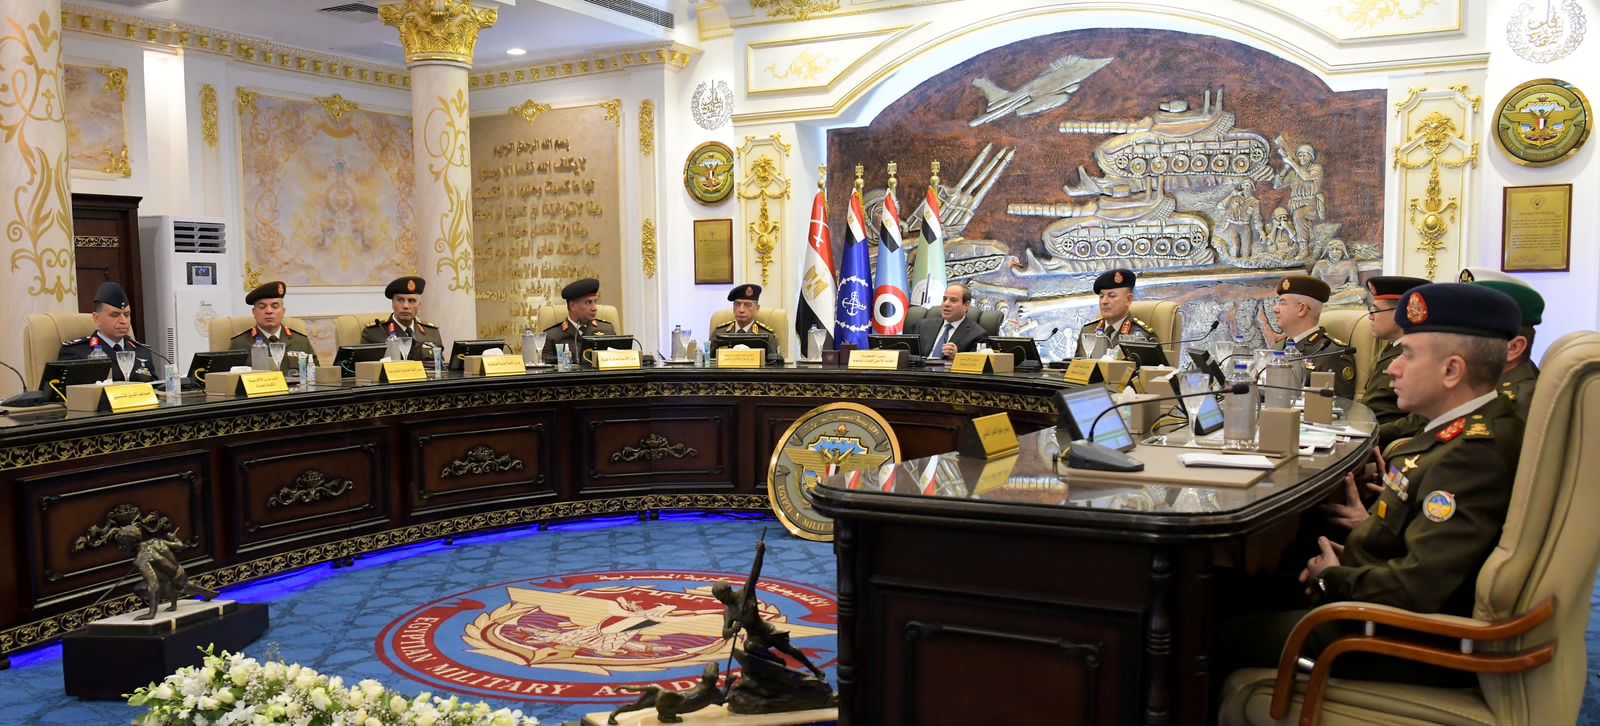 الرئيس السيسي يصل الكلية الحربية ليشهد اختبارات كشف الهيئة لطلبة الأكاديمية العسكرية